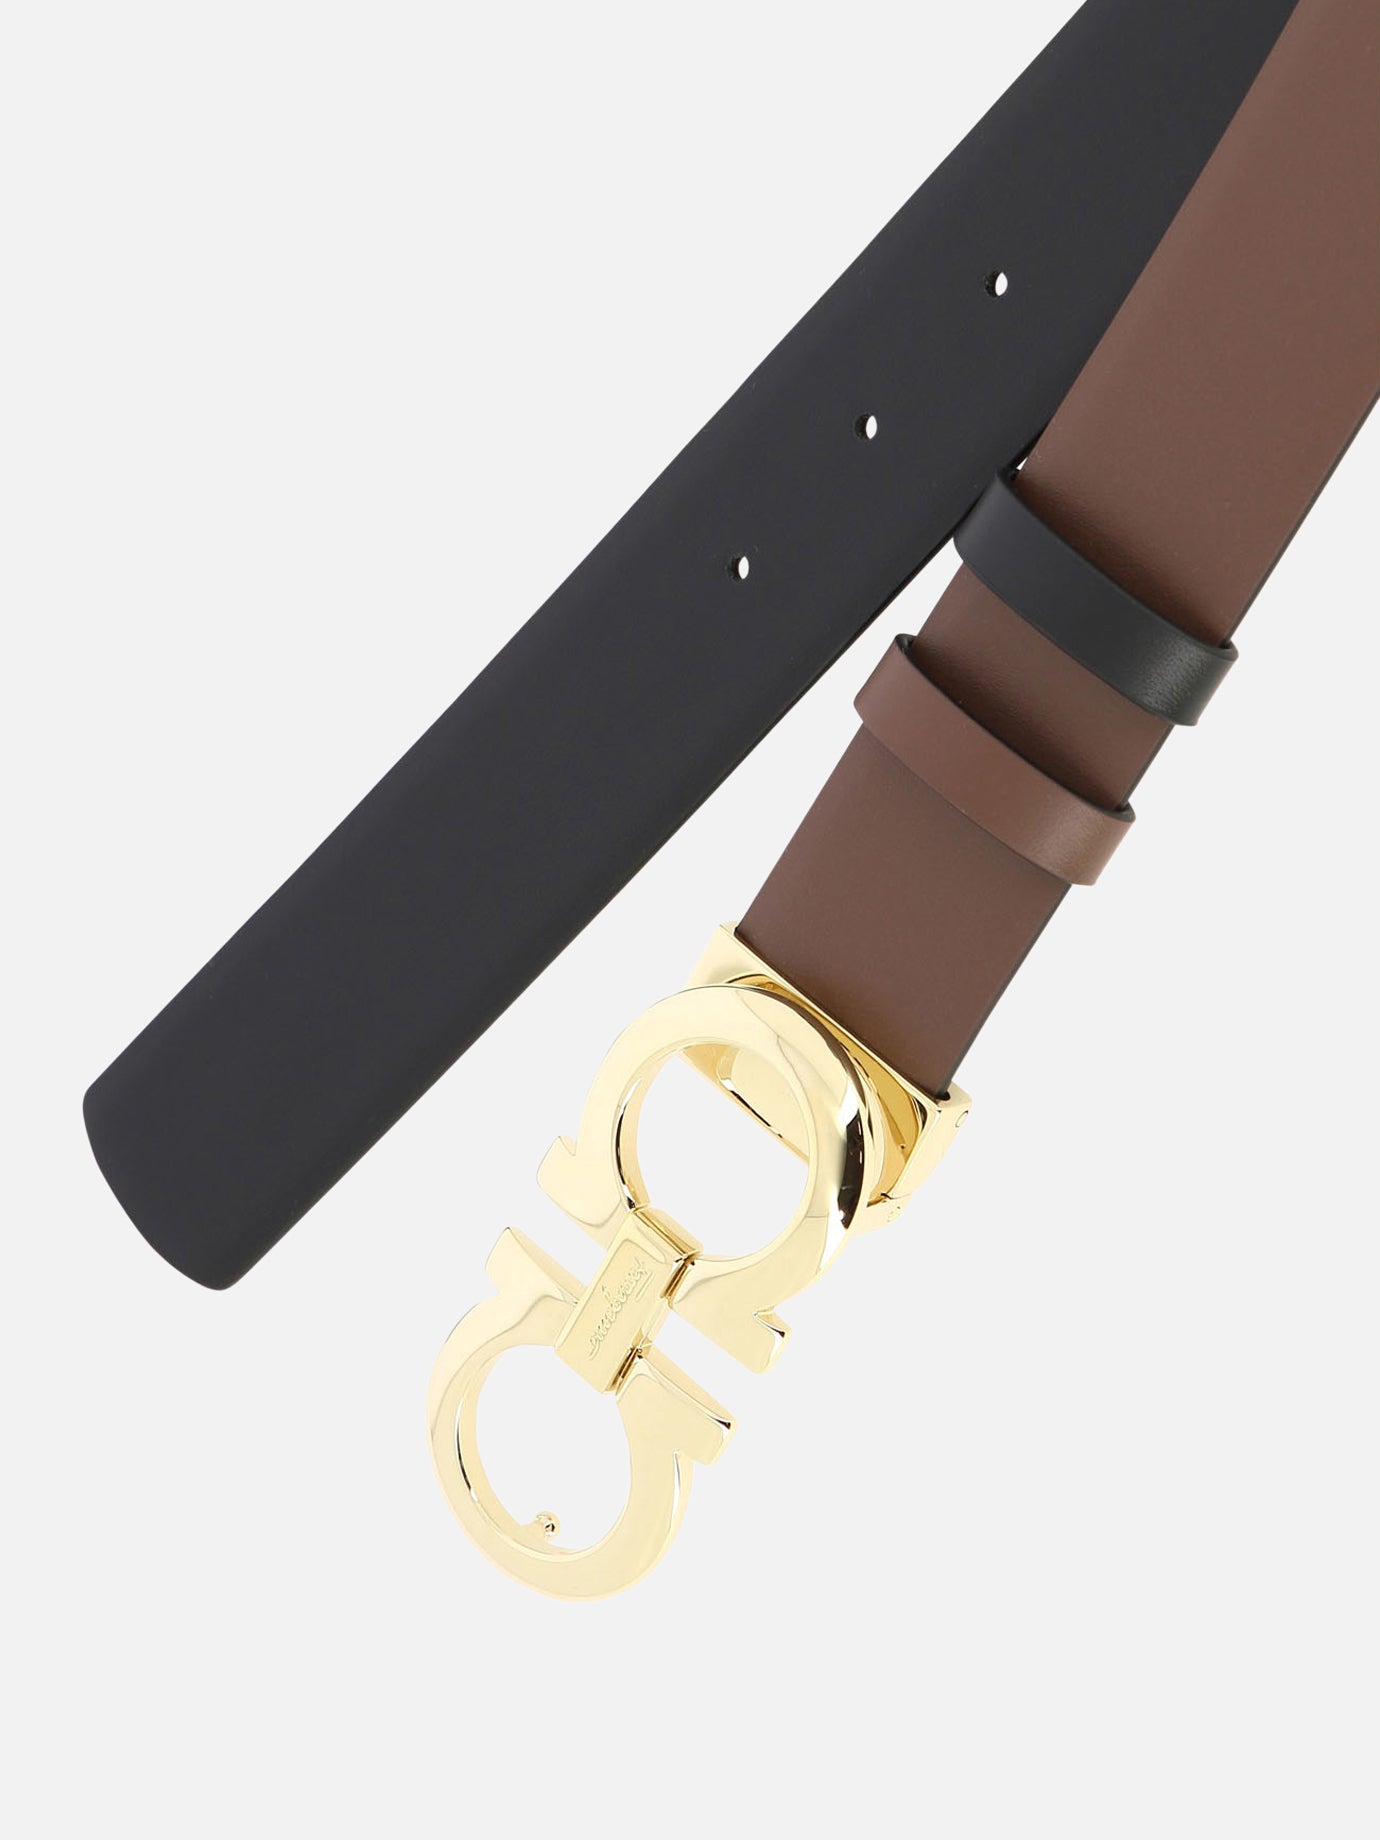 Reversible and adjustable "Gancini" belt